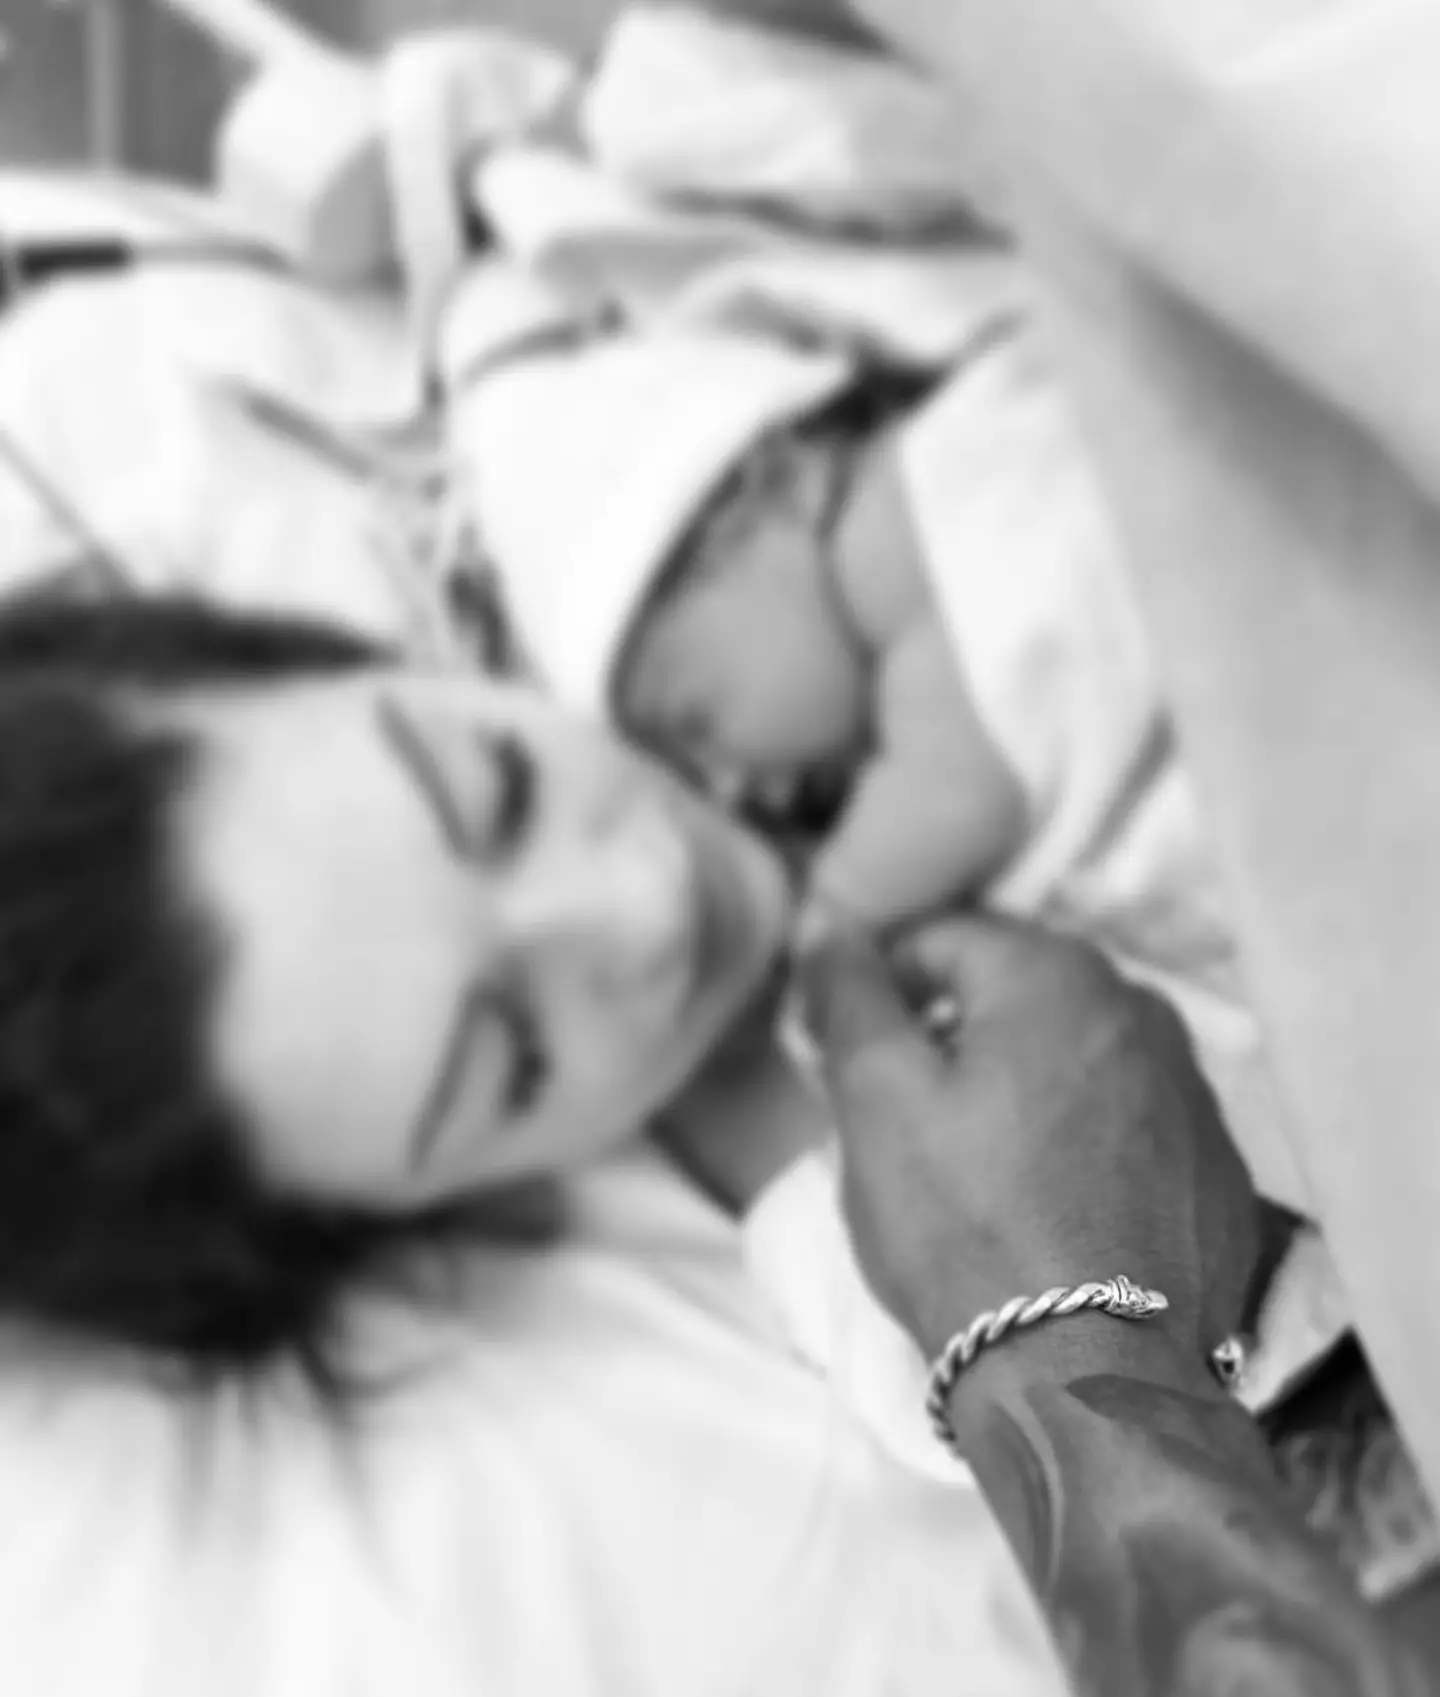 Jordan Banjo welcomed his third child last week.